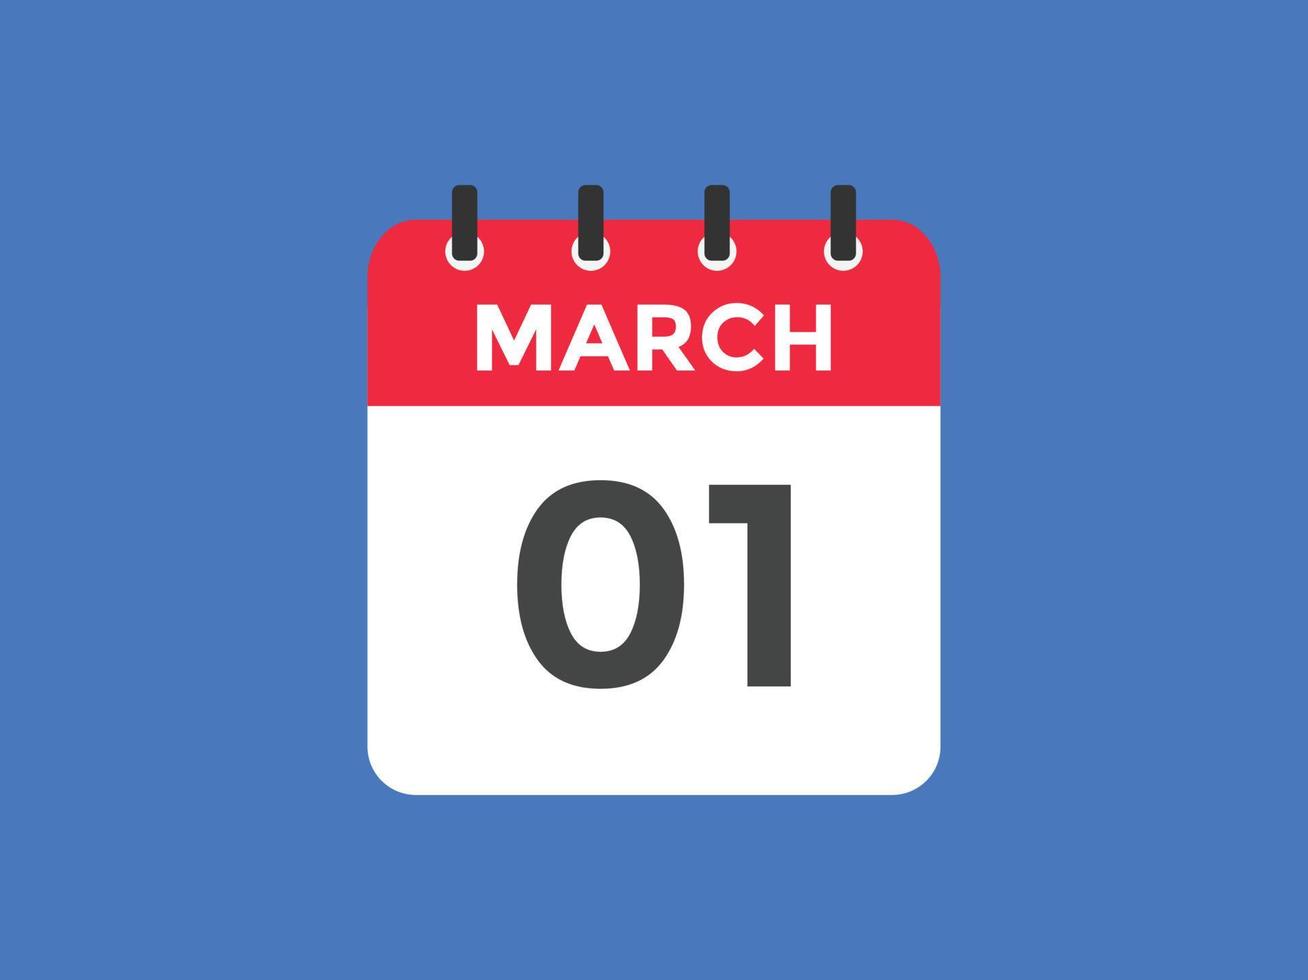 rappel du calendrier du 1er mars. Modèle d'icône de calendrier quotidien du 1er mars. modèle de conception d'icône calendrier 1er mars. illustration vectorielle vecteur